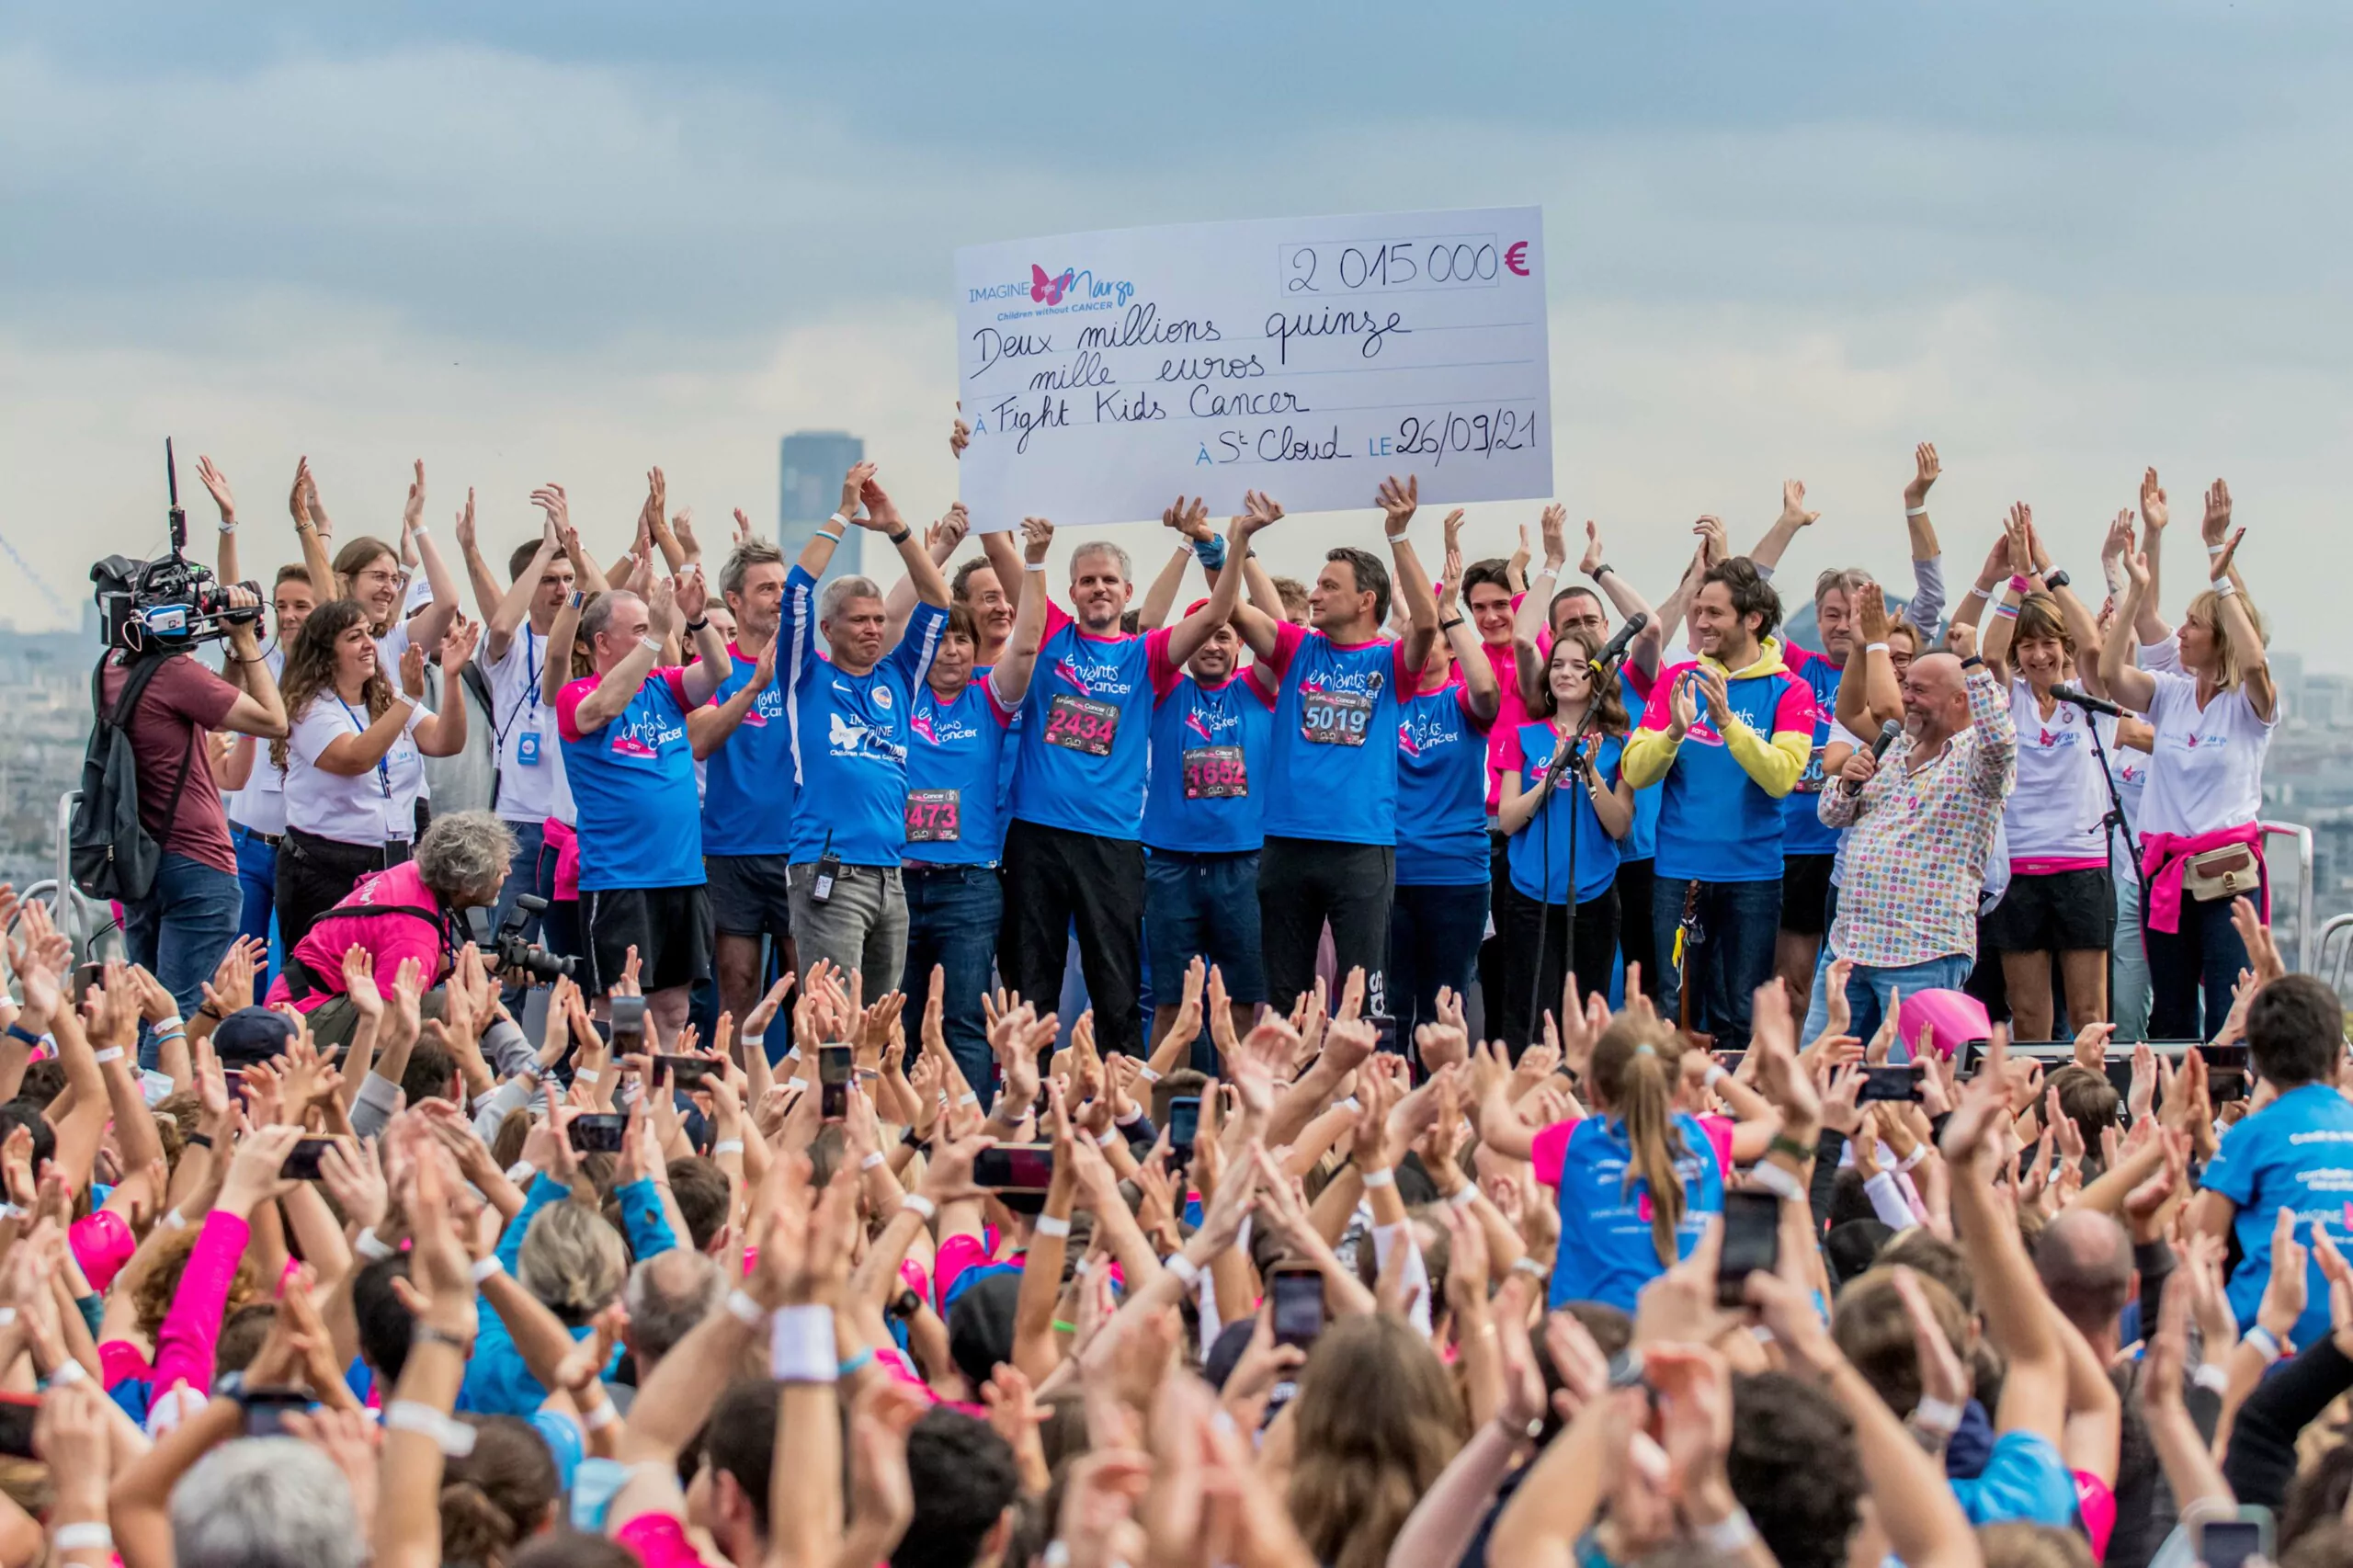 Plus de 2 millions d'euros collectés pour la recherche à l'occasion de la 10e édition de la course Enfants sans Cancer